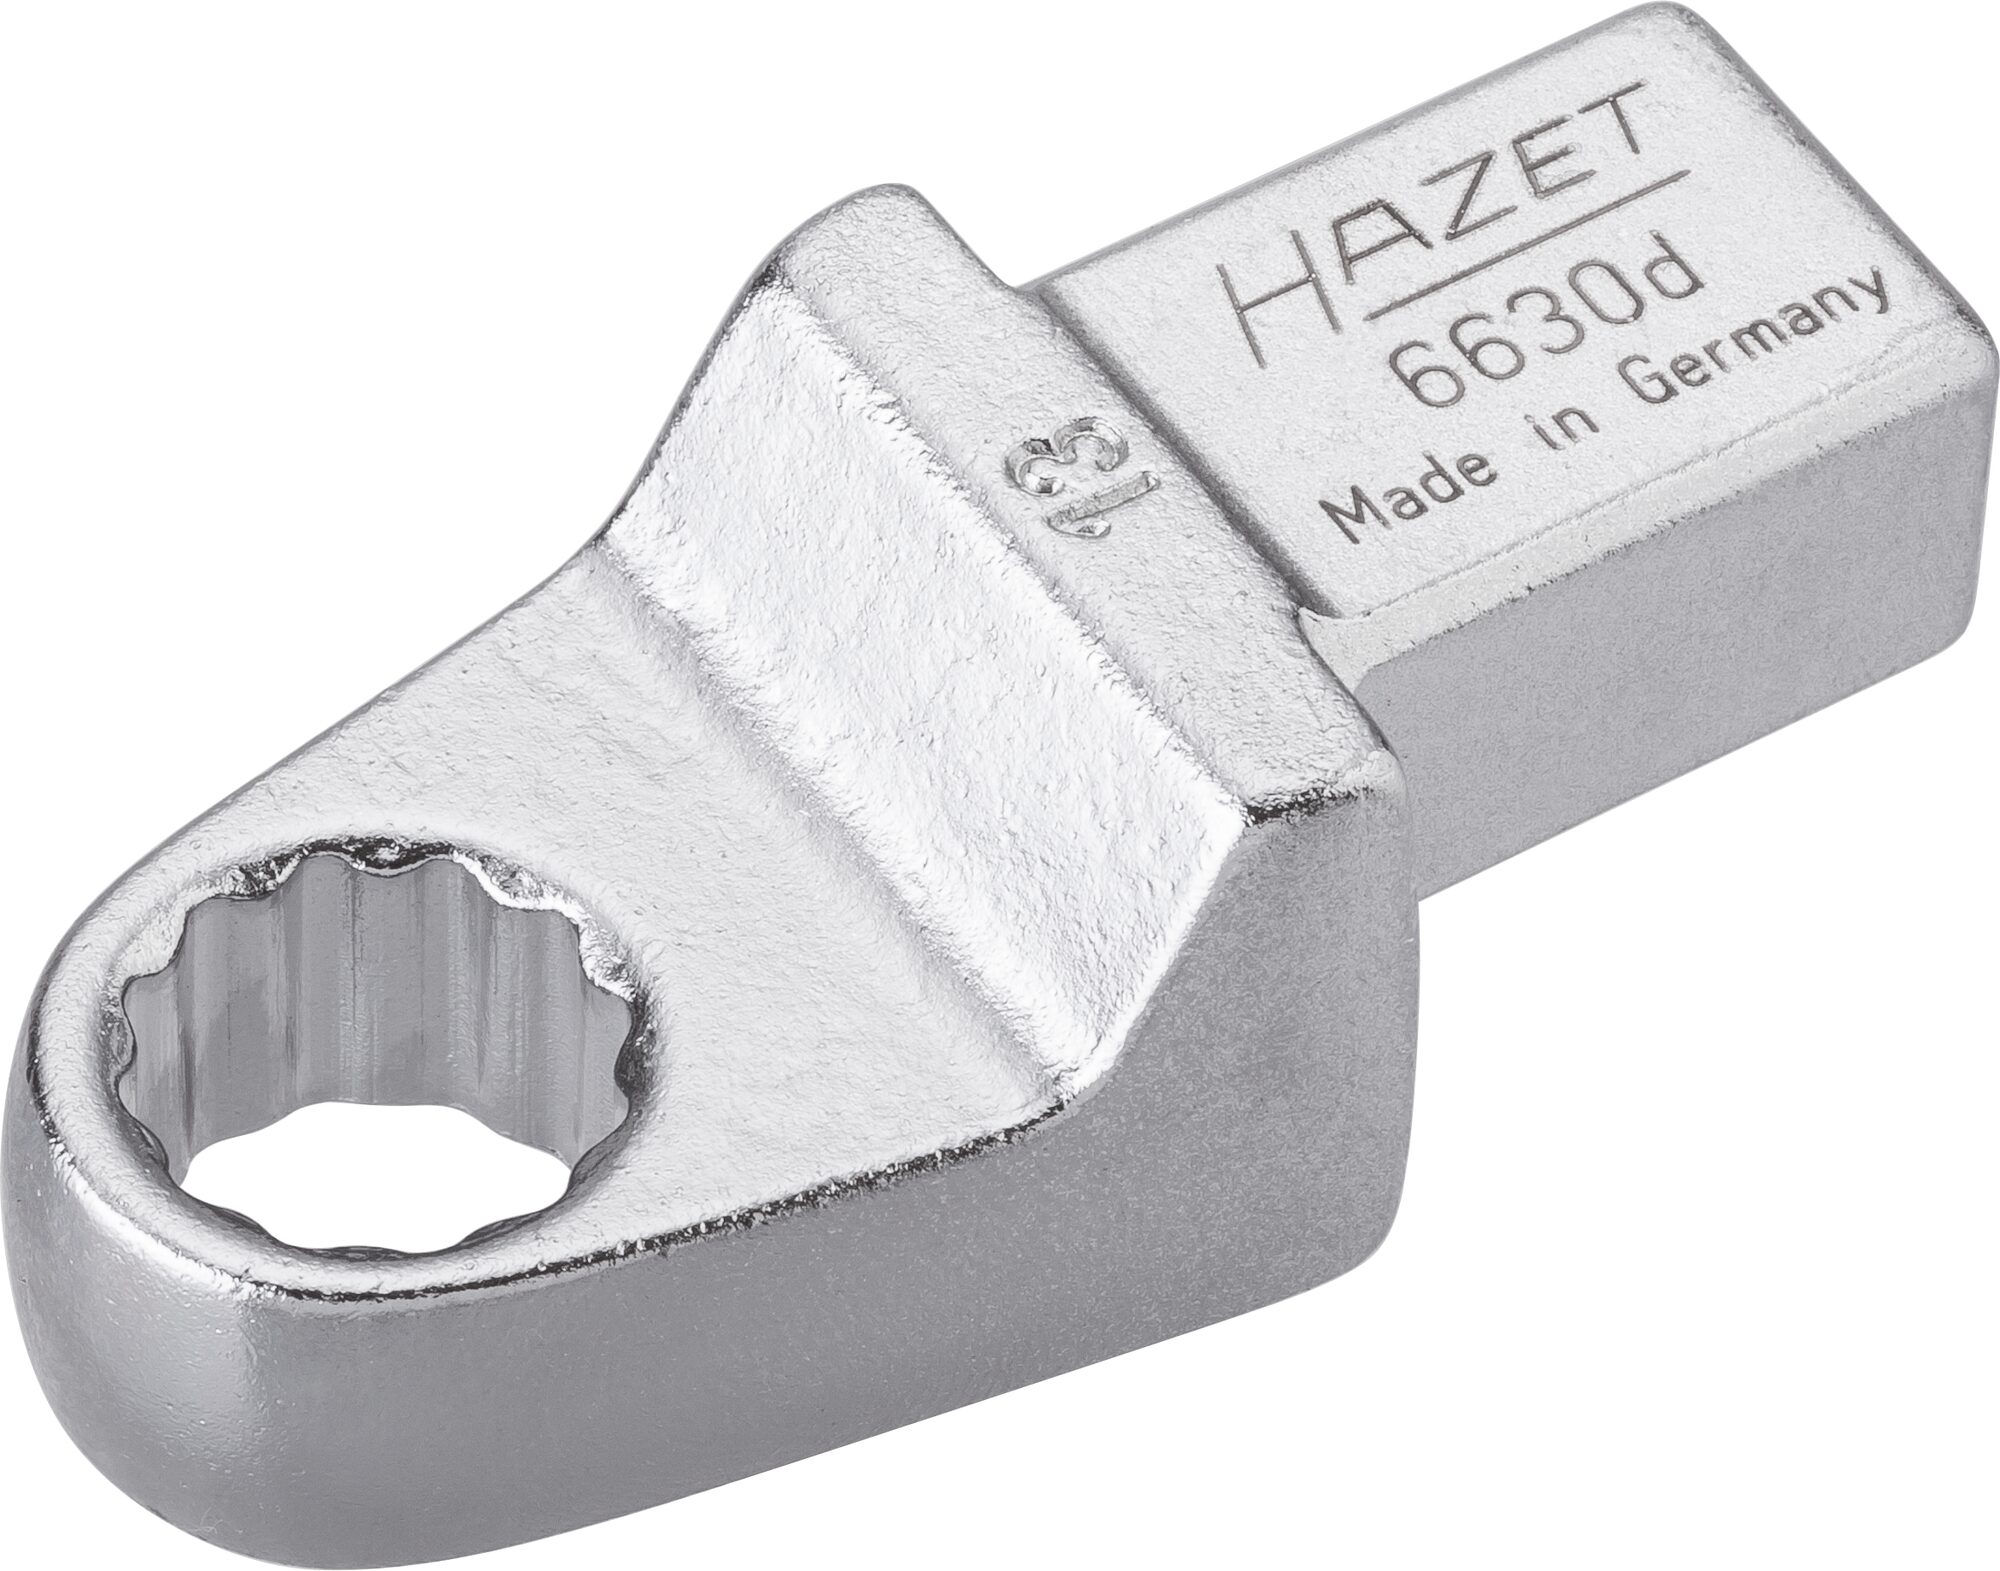 HAZET Einsteck-Ringschlüssel 6630D-13 · Einsteck-Vierkant 14 x 18 mm · Außen Doppel-Sechskant-Tractionsprofil · 13 mm